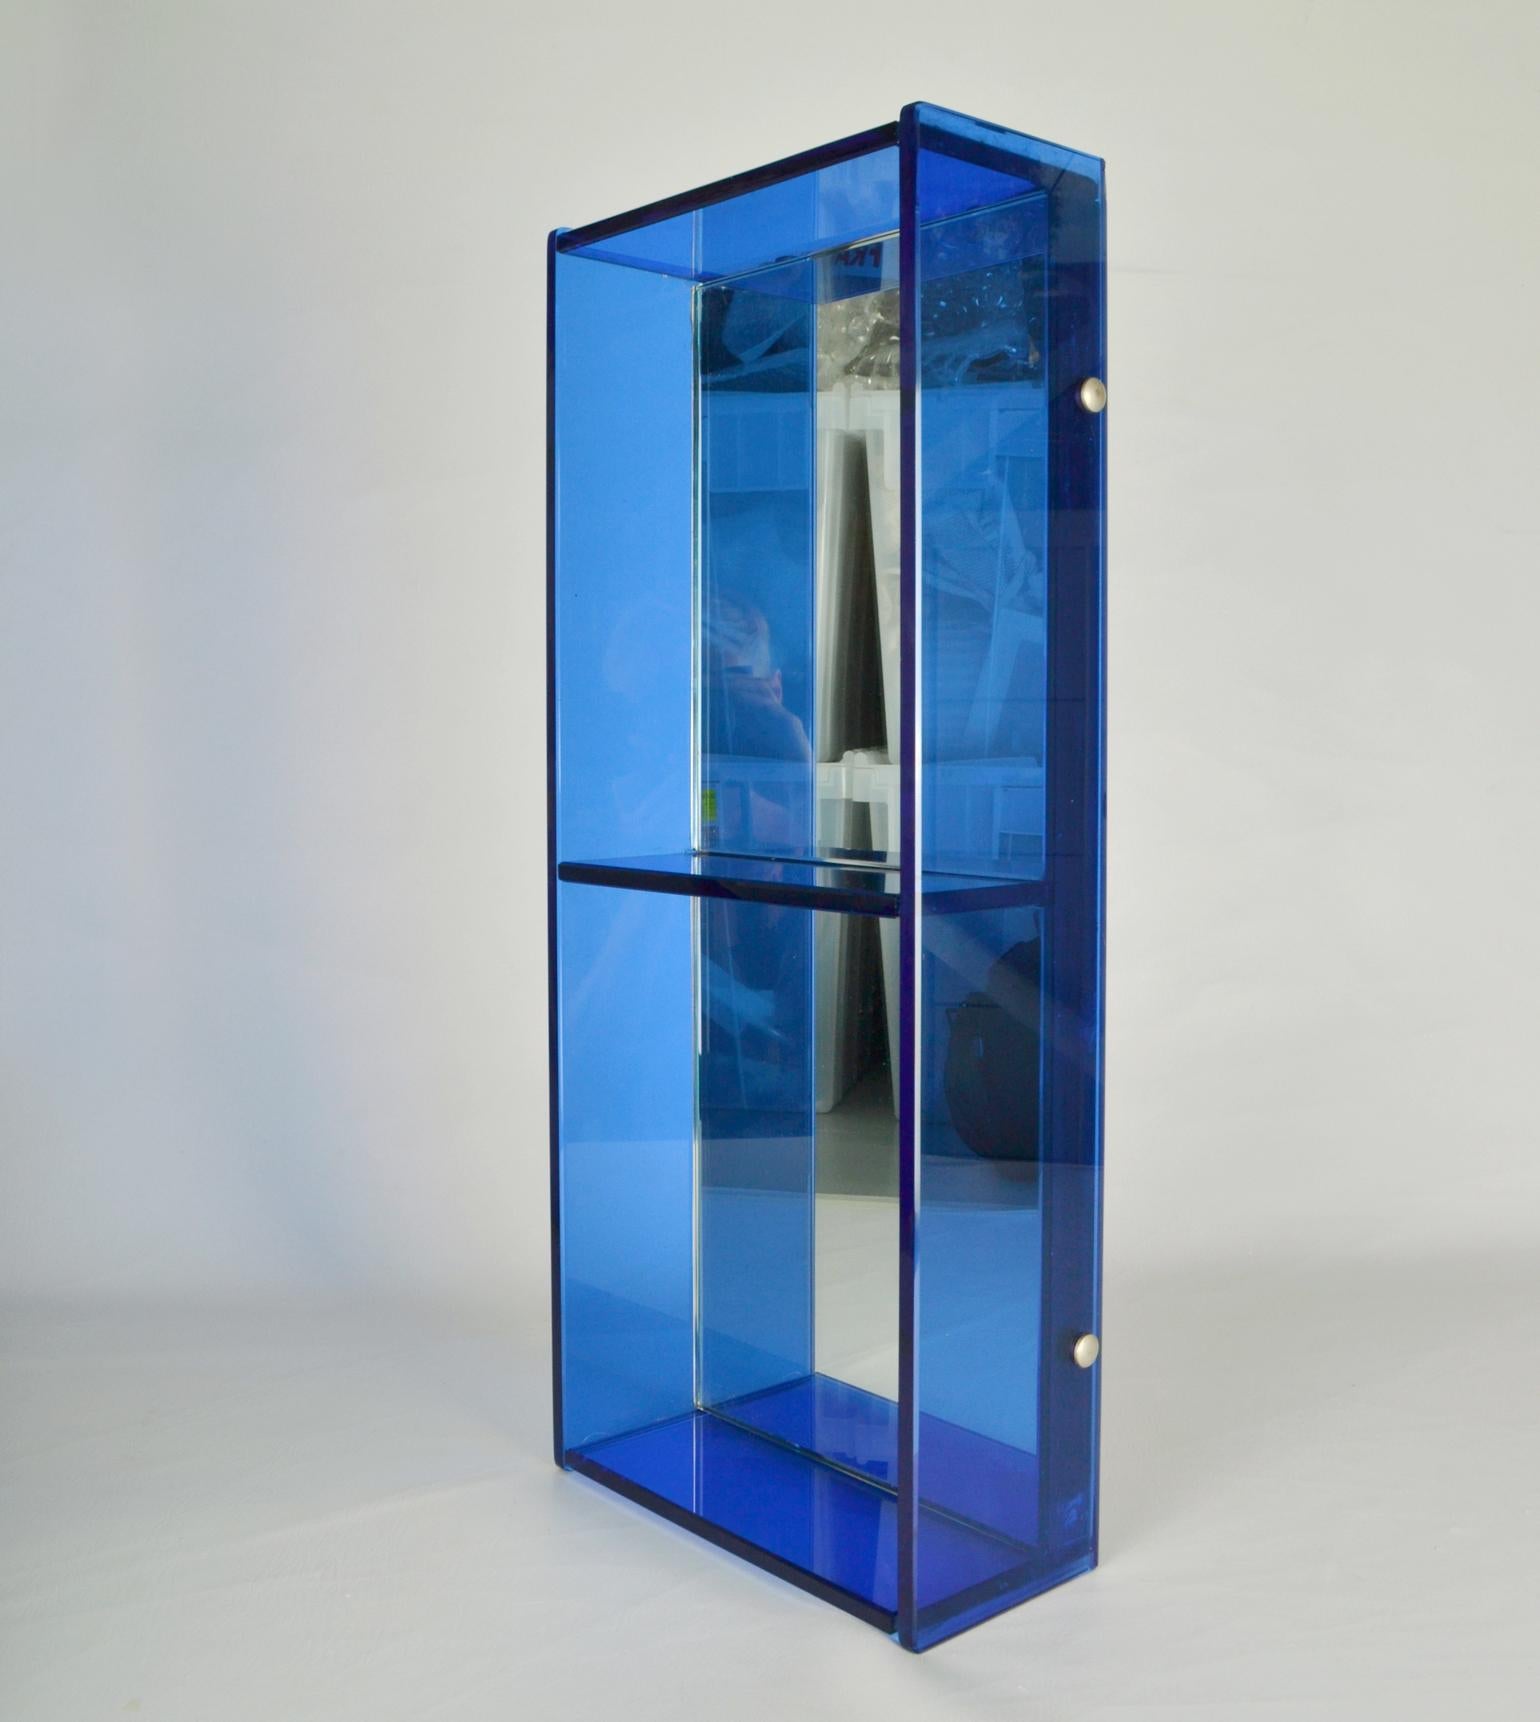 Blauer Christal-Glasspiegel und Wandregal, Fontana Arte / Cristal Arte, 1960er Jahre. Der rechteckige Spiegel hat zwei quadratische Fächer mit blauen äußeren Glasrändern und einen Rückspiegel. 
Der vertikal oder horizontal aufgehängte Spiegel eignet